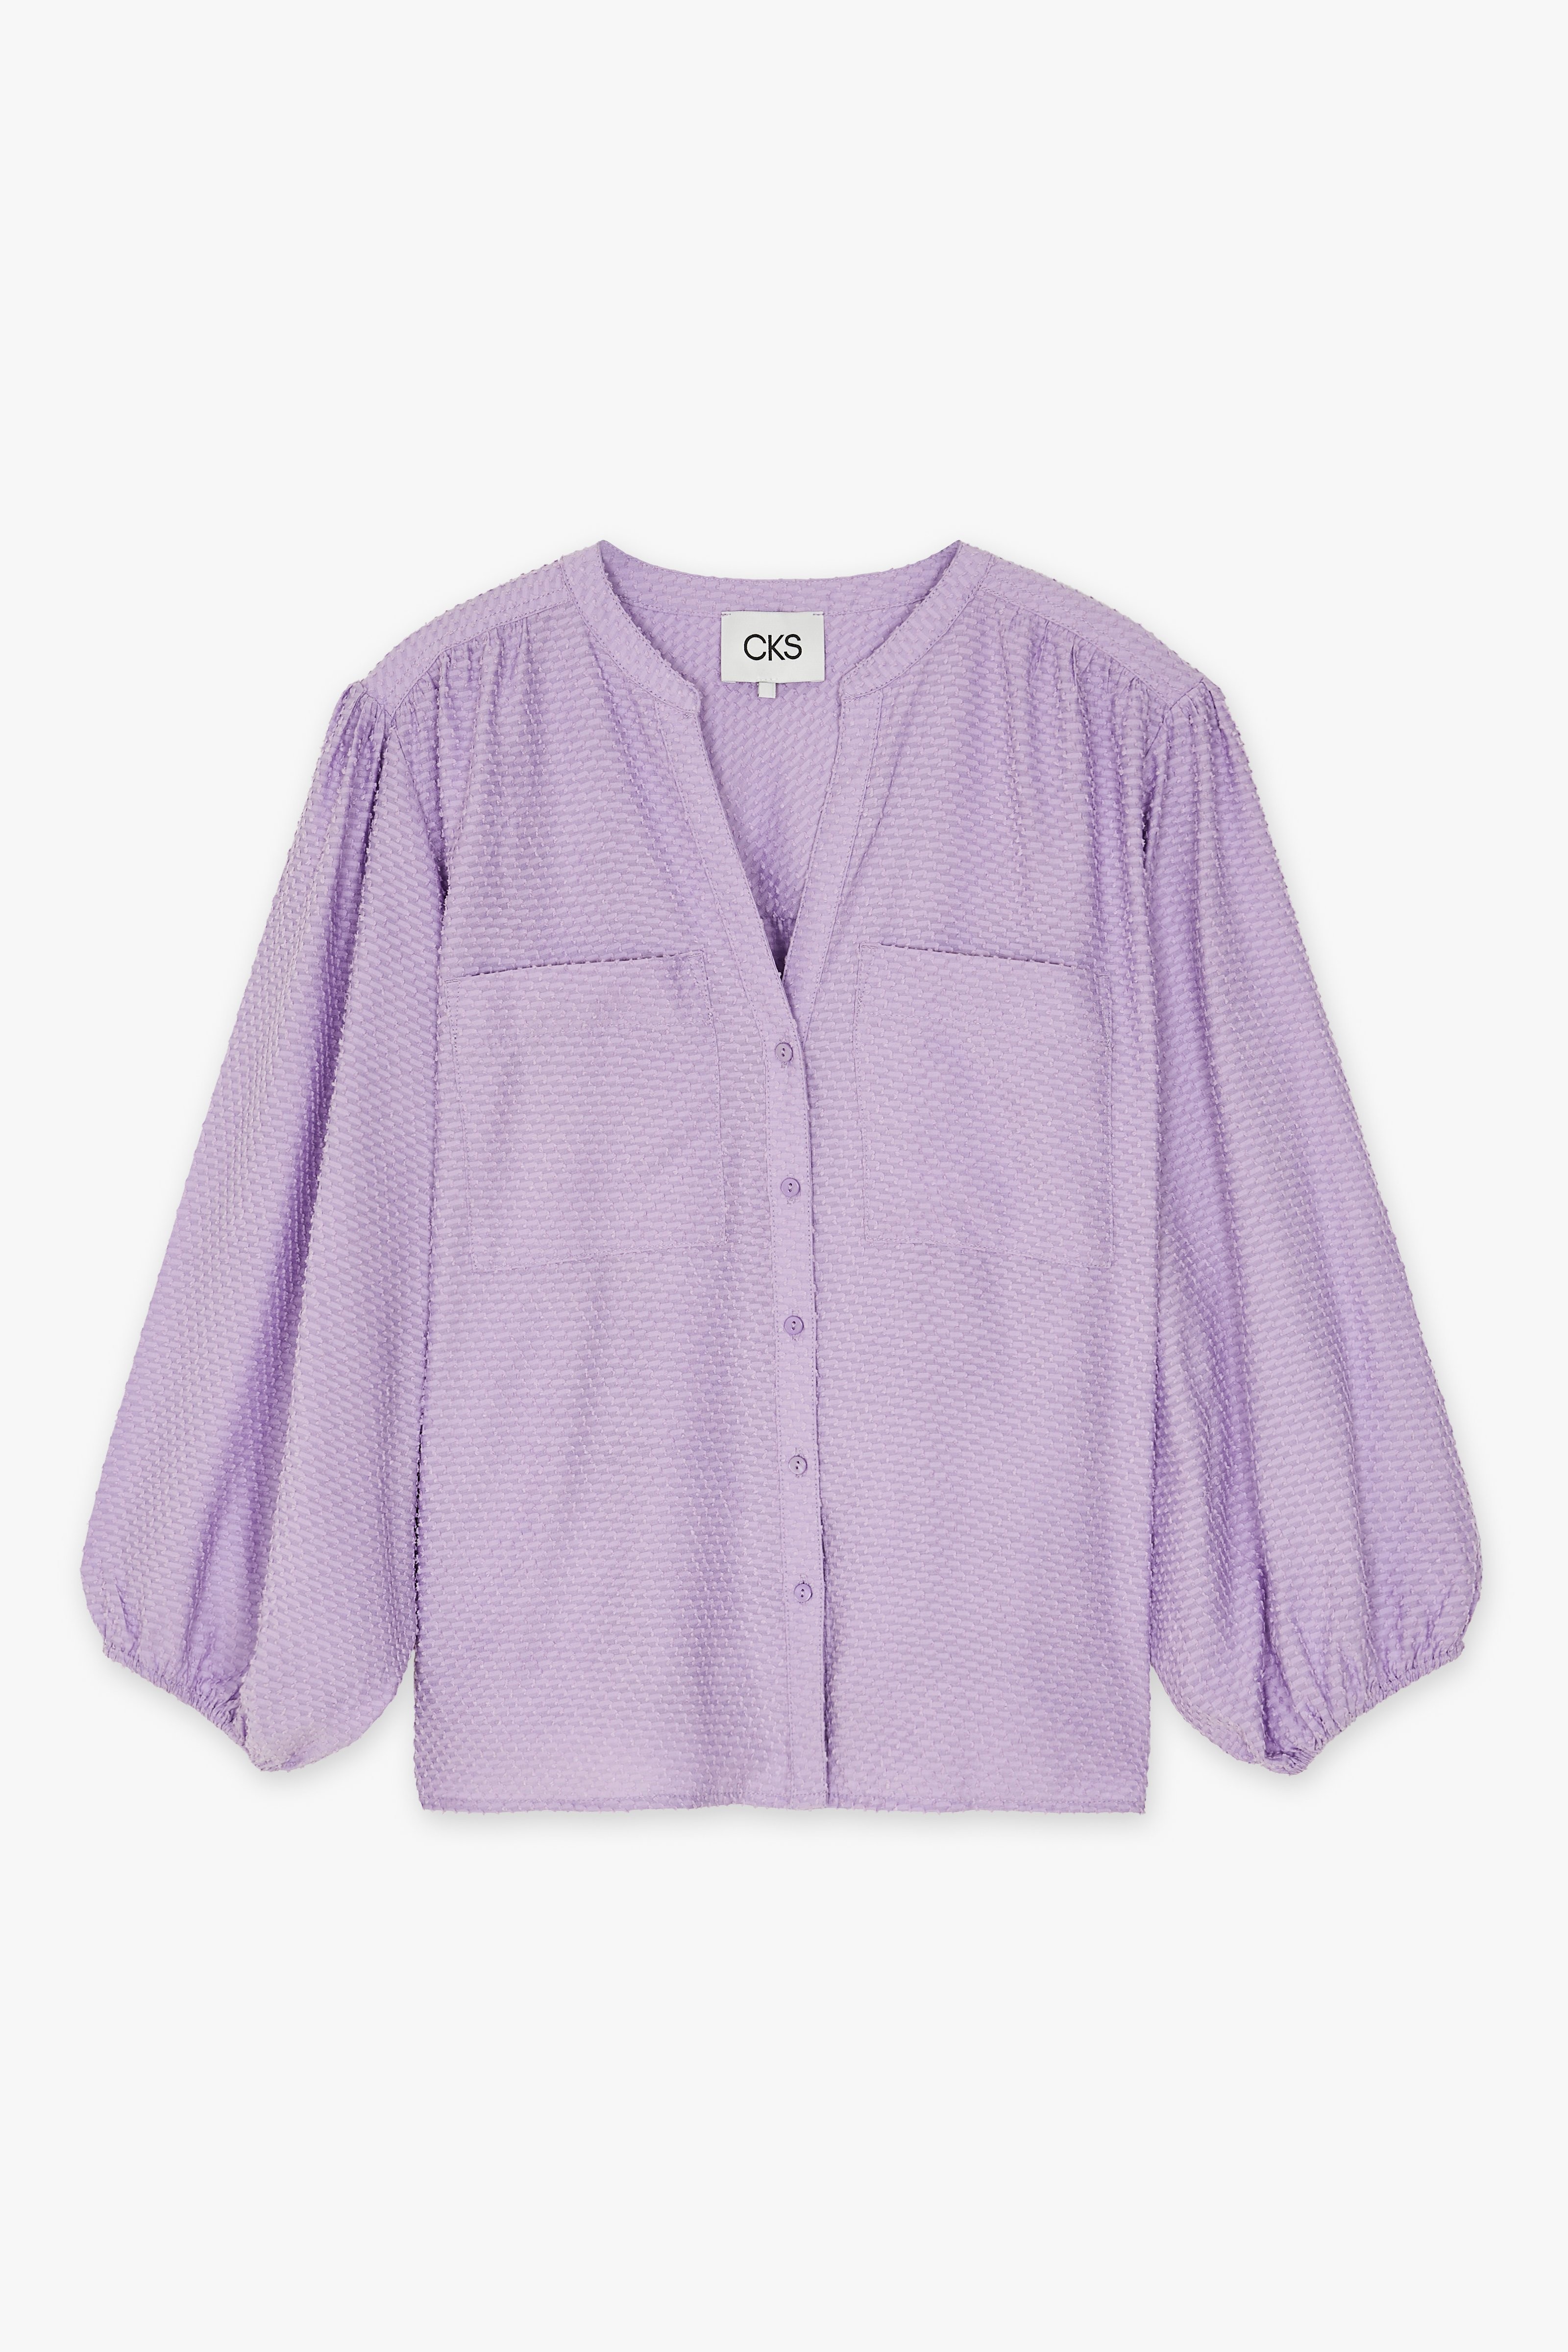 CKS Dames - WILD - blouse lange mouwen - lila